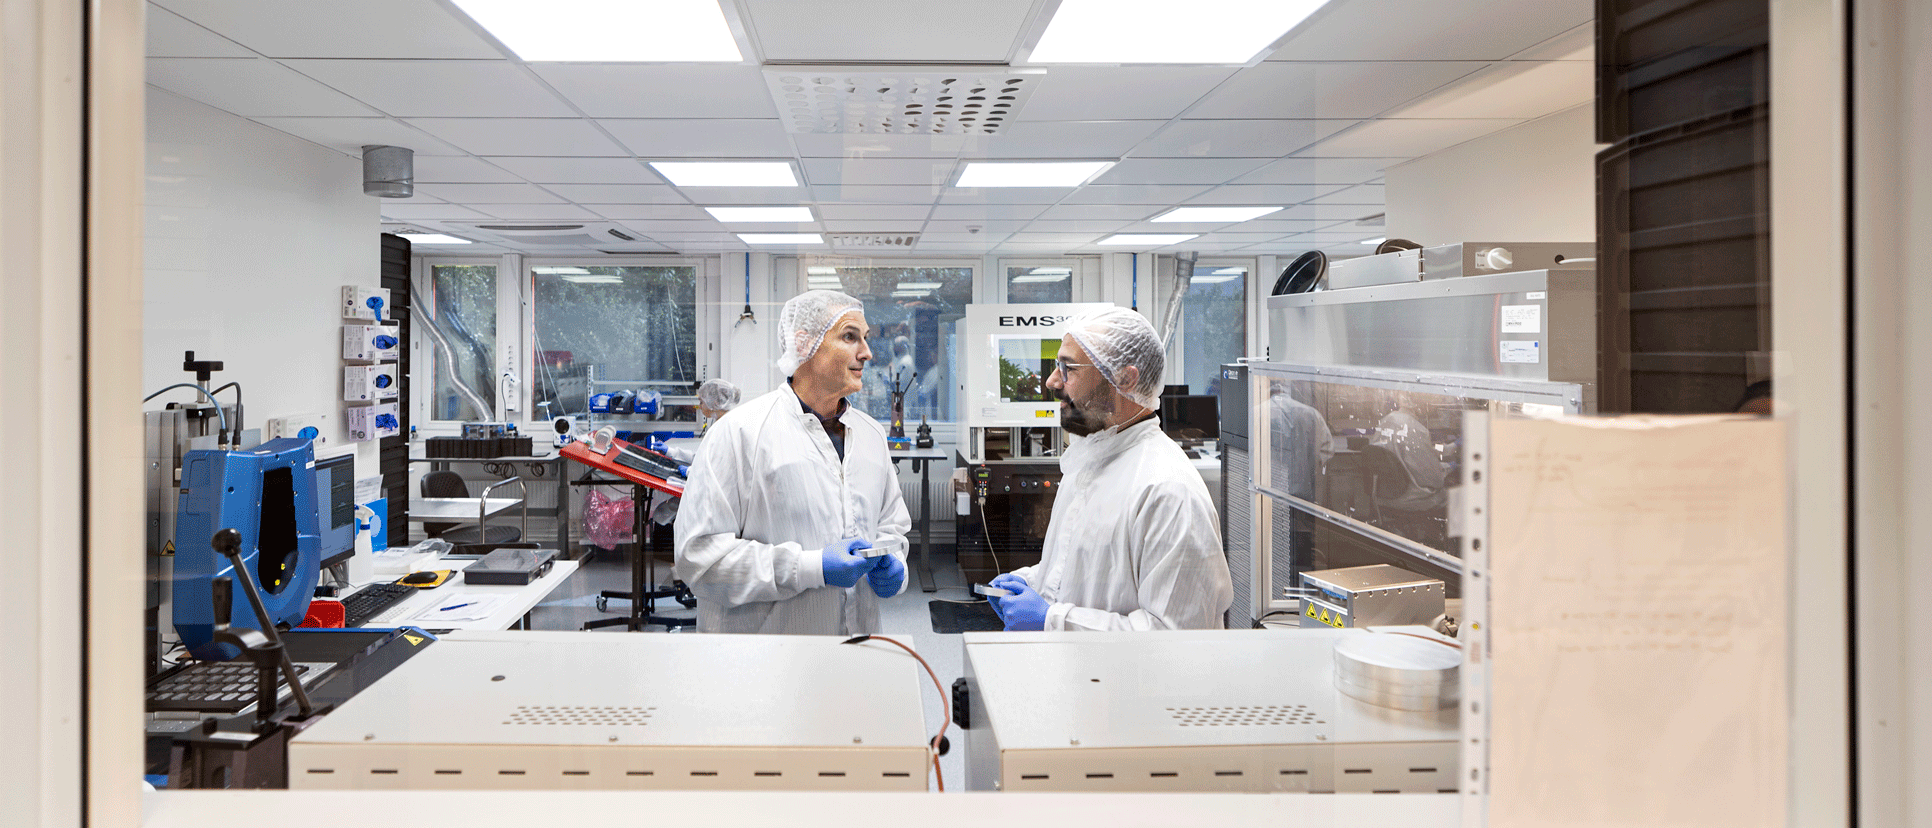 Johan och Özden i laboratoriet, iförda labbkläder